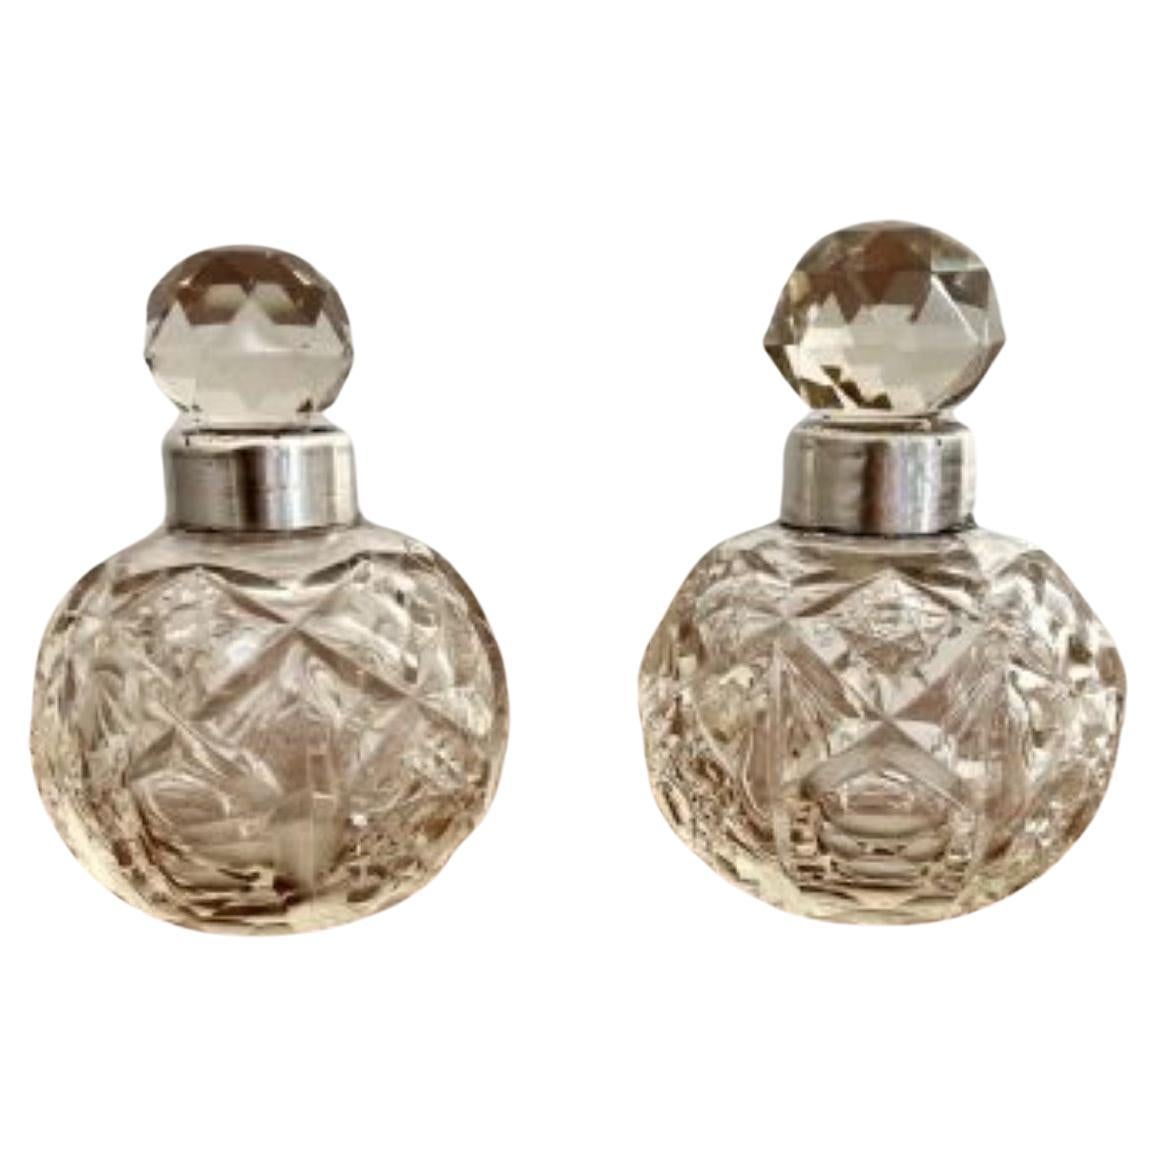 Hochwertiges Paar antiker edwardianischer Silberkragen & geschliffene Glasduftflaschen 